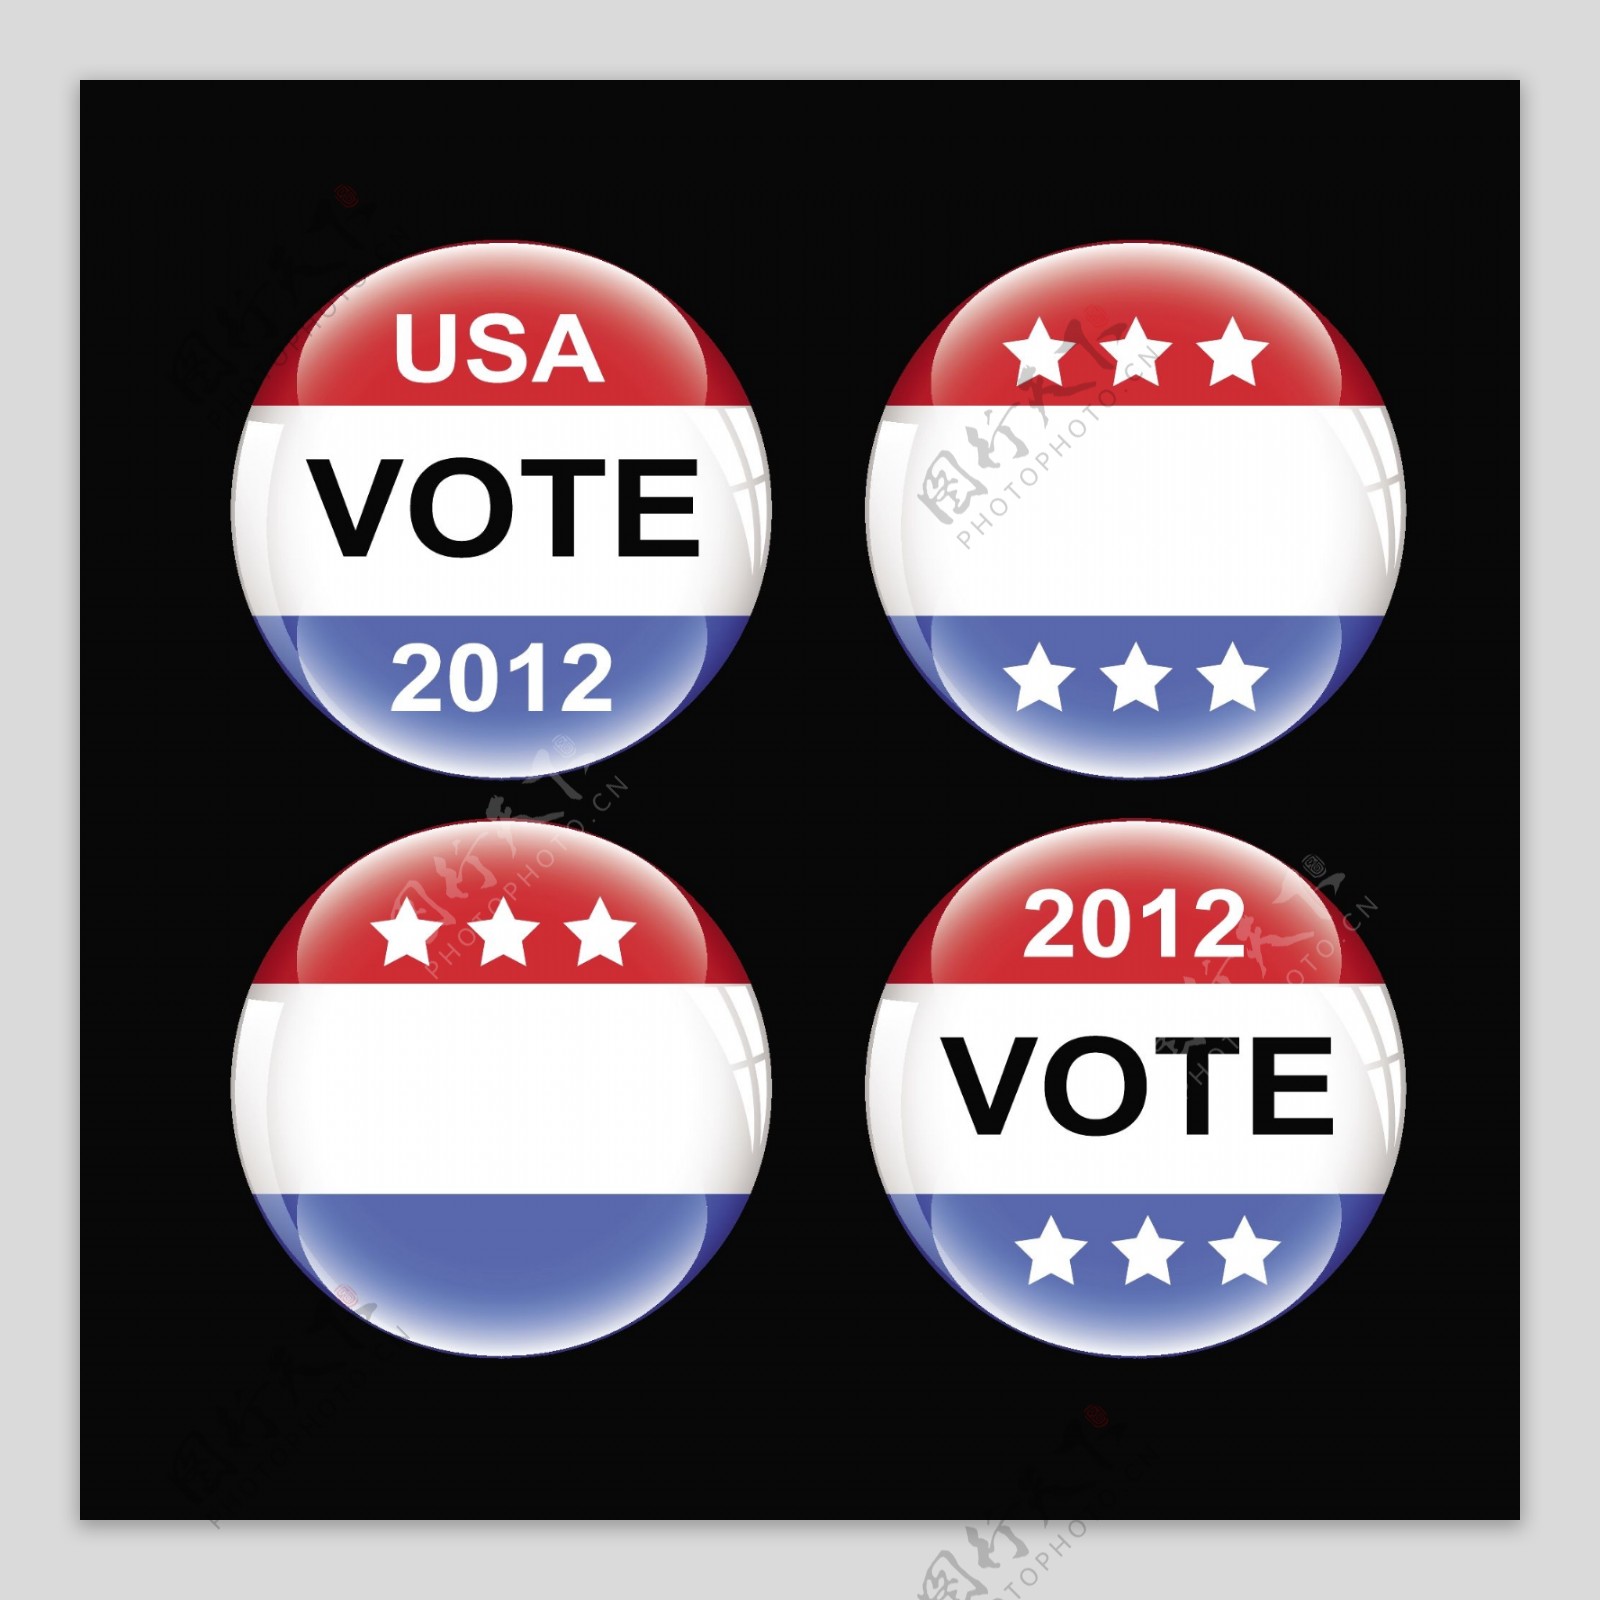 美国投票按钮矢量的徽章